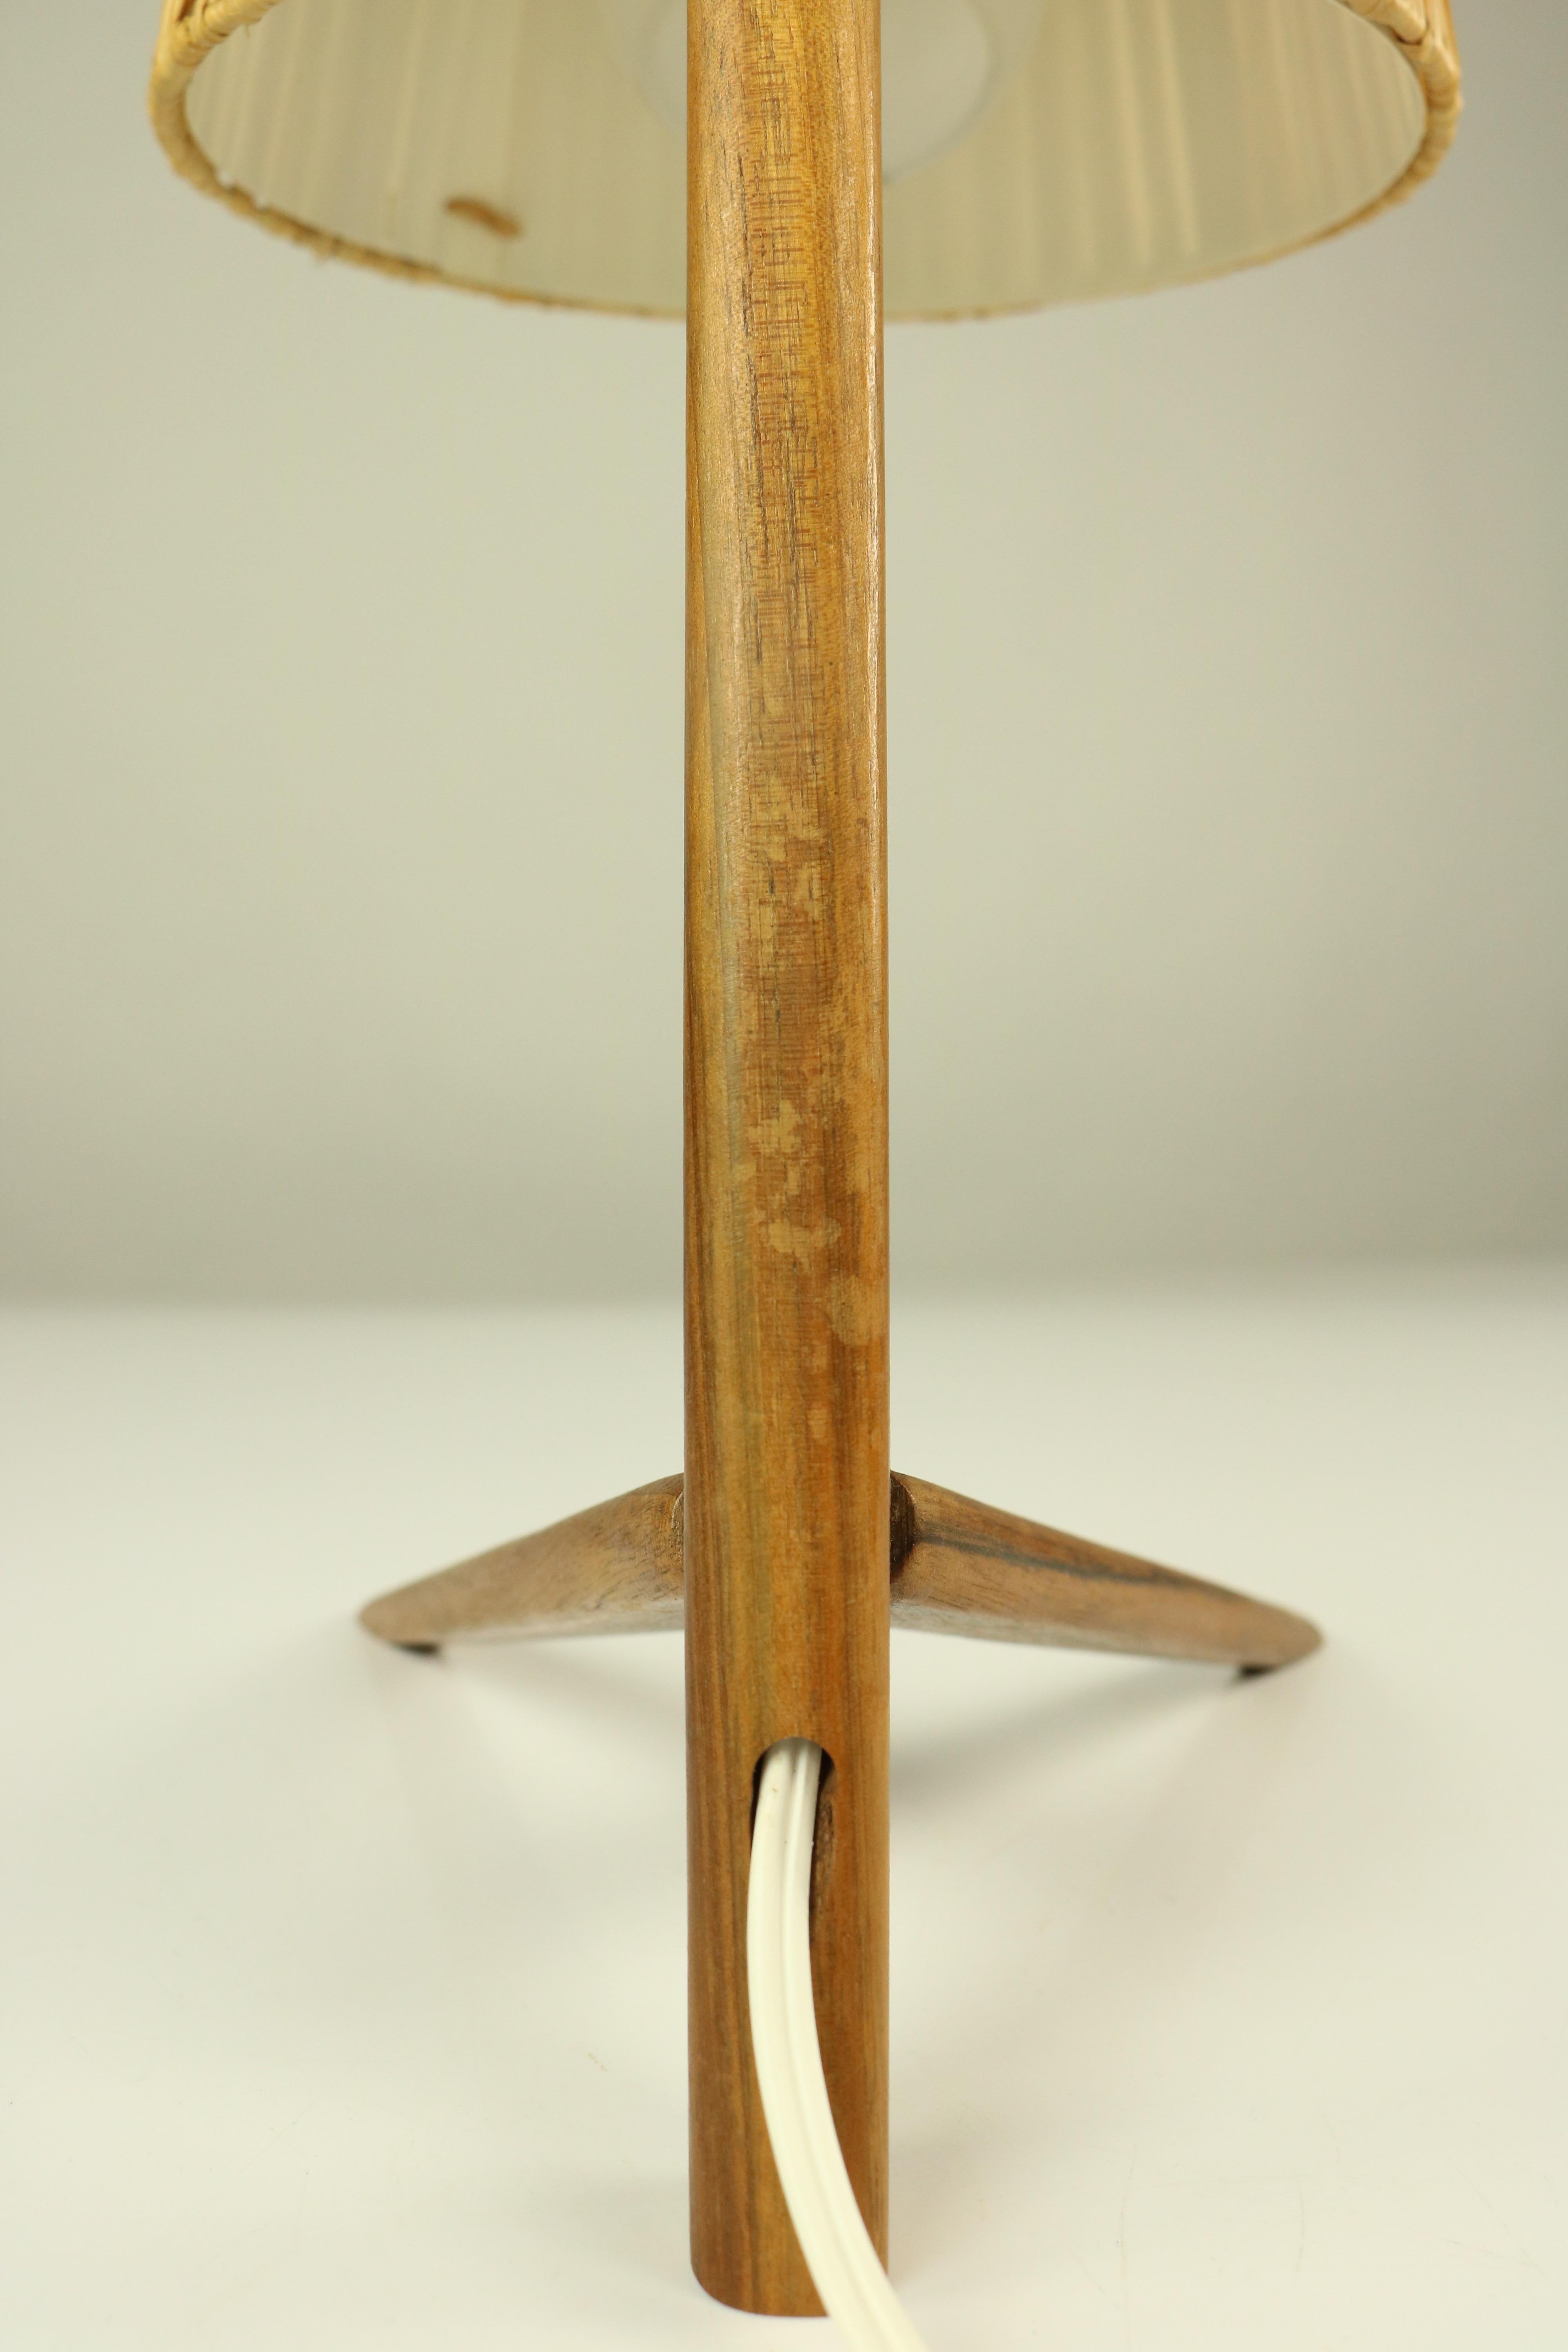 Mid-20th Century Vintage Teak Table Lamp Crow Foot & Bast Shade Midcentury 1950s Austria Kalmar For Sale